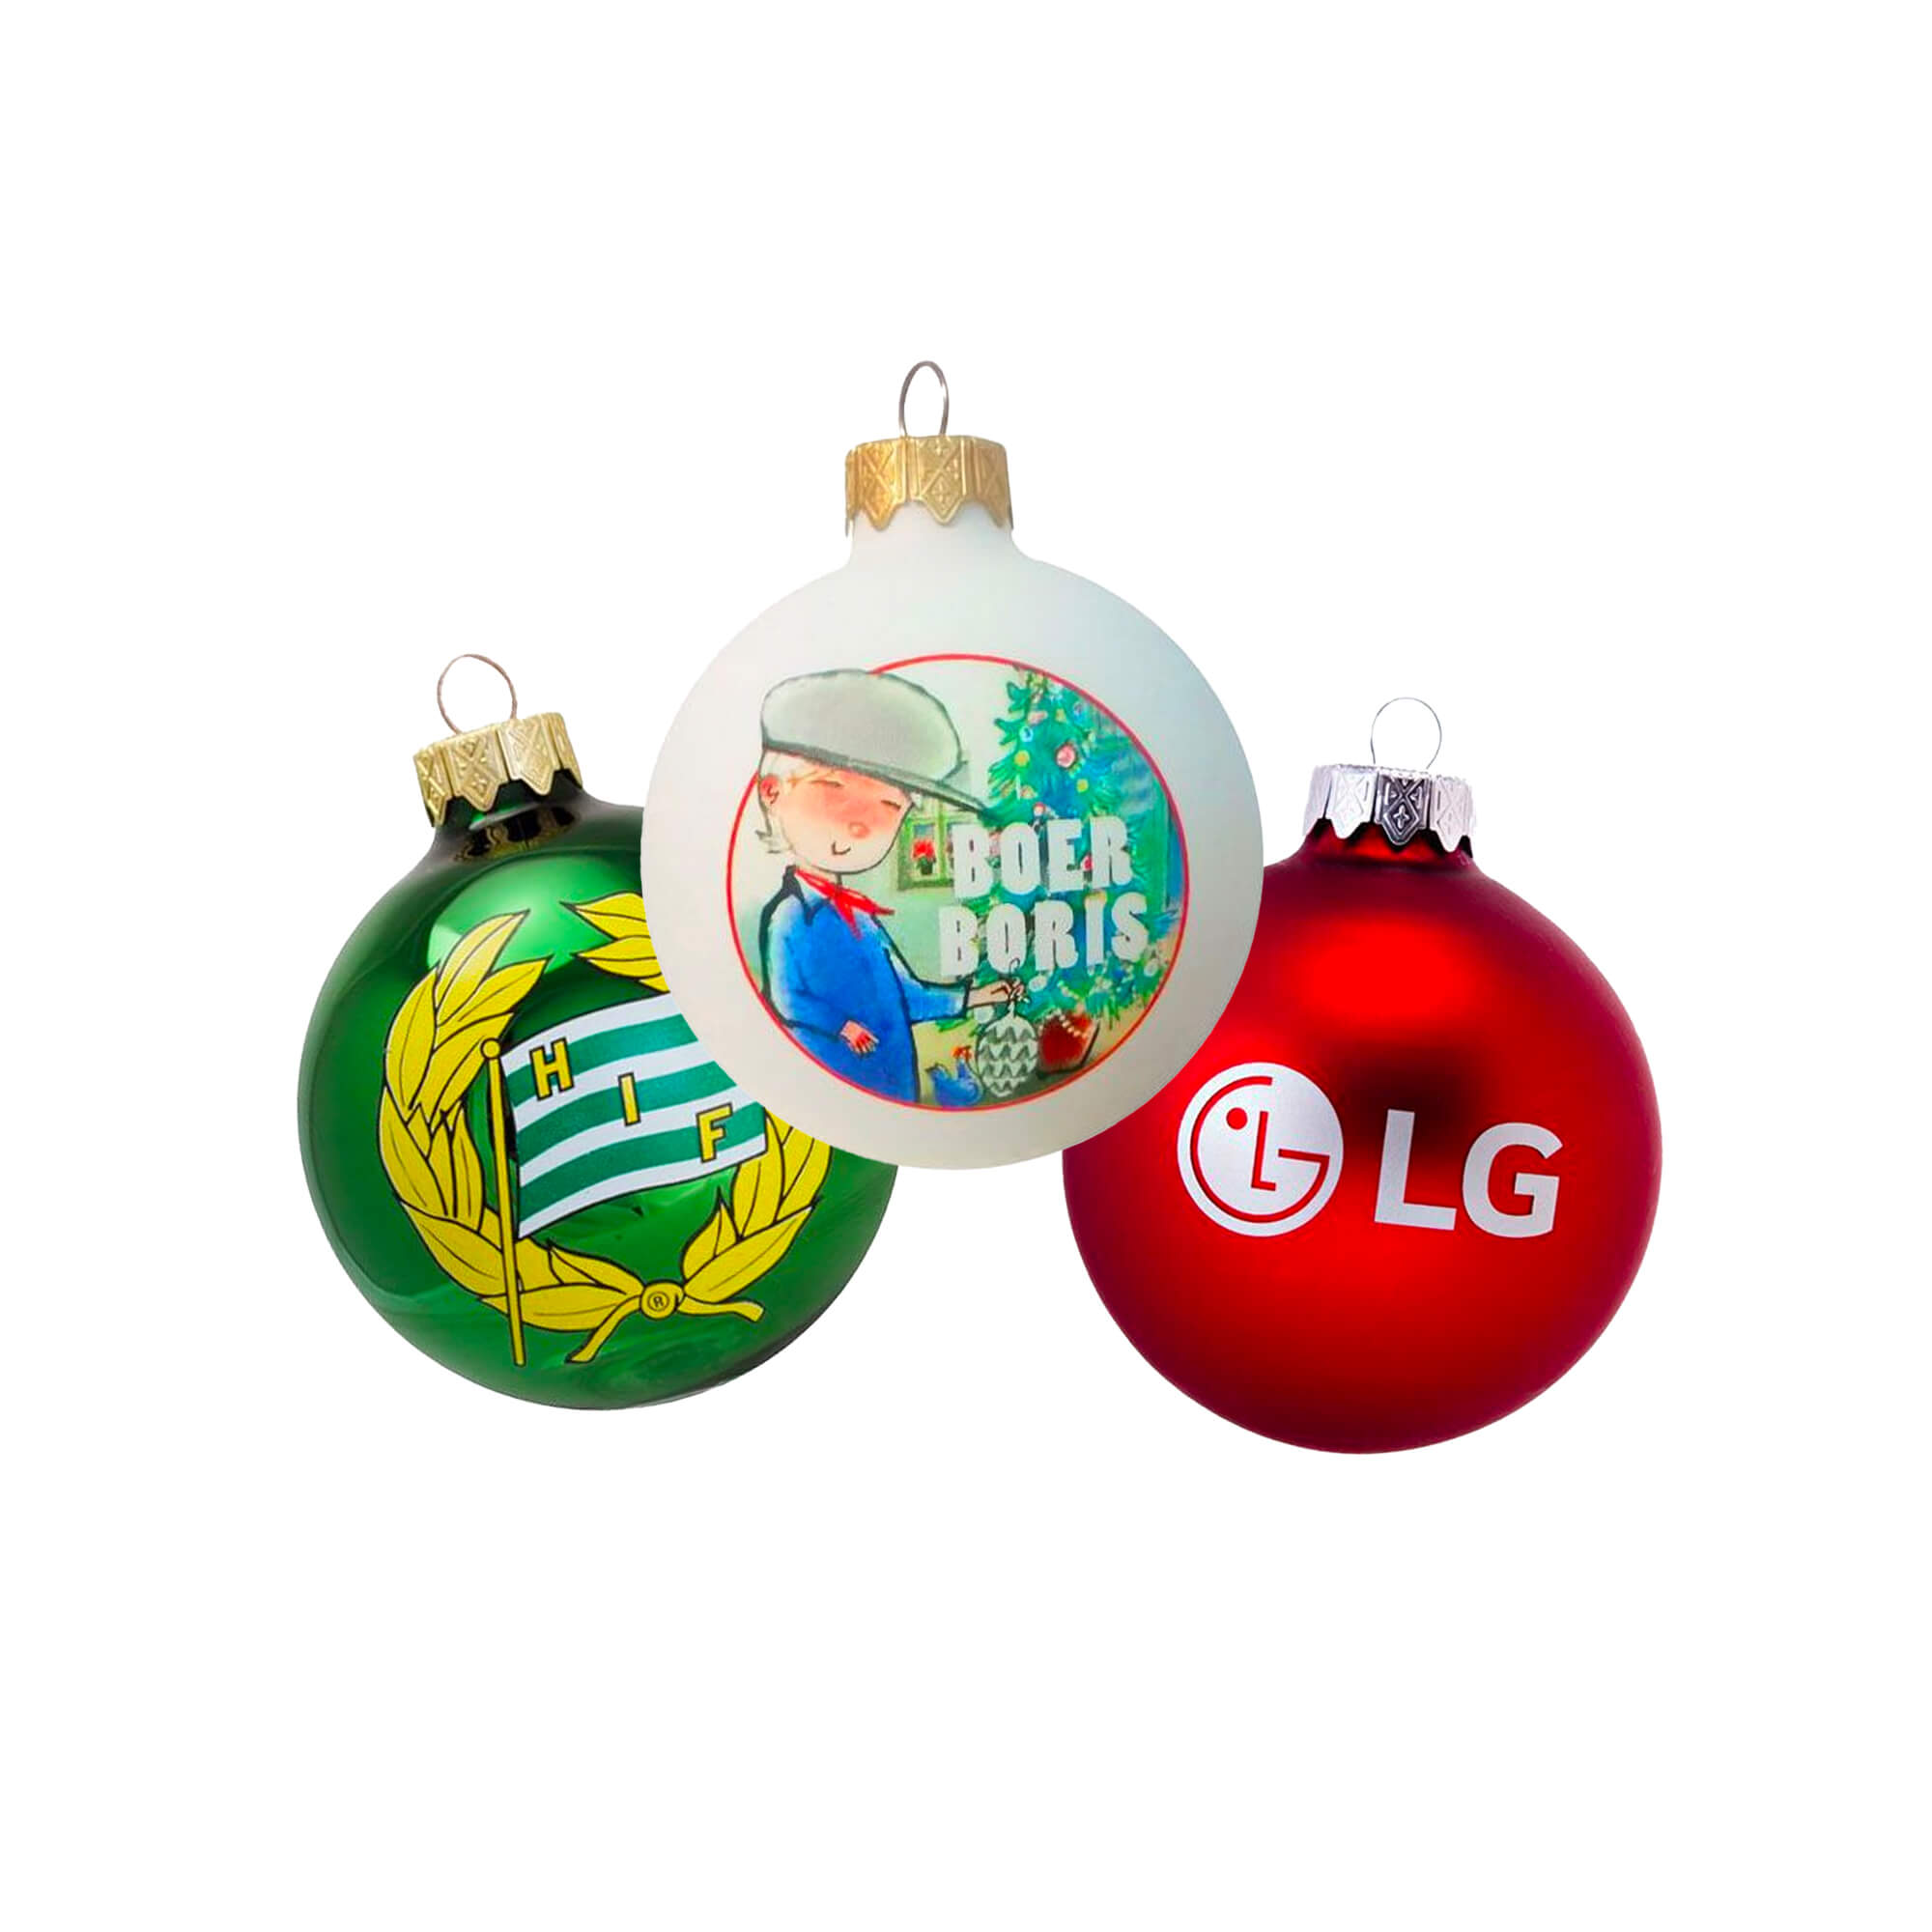 Verwisselbaar Overdreven verhaal Glazen kerstballen bedrukken - Van 1 kleur tot full-color snel!